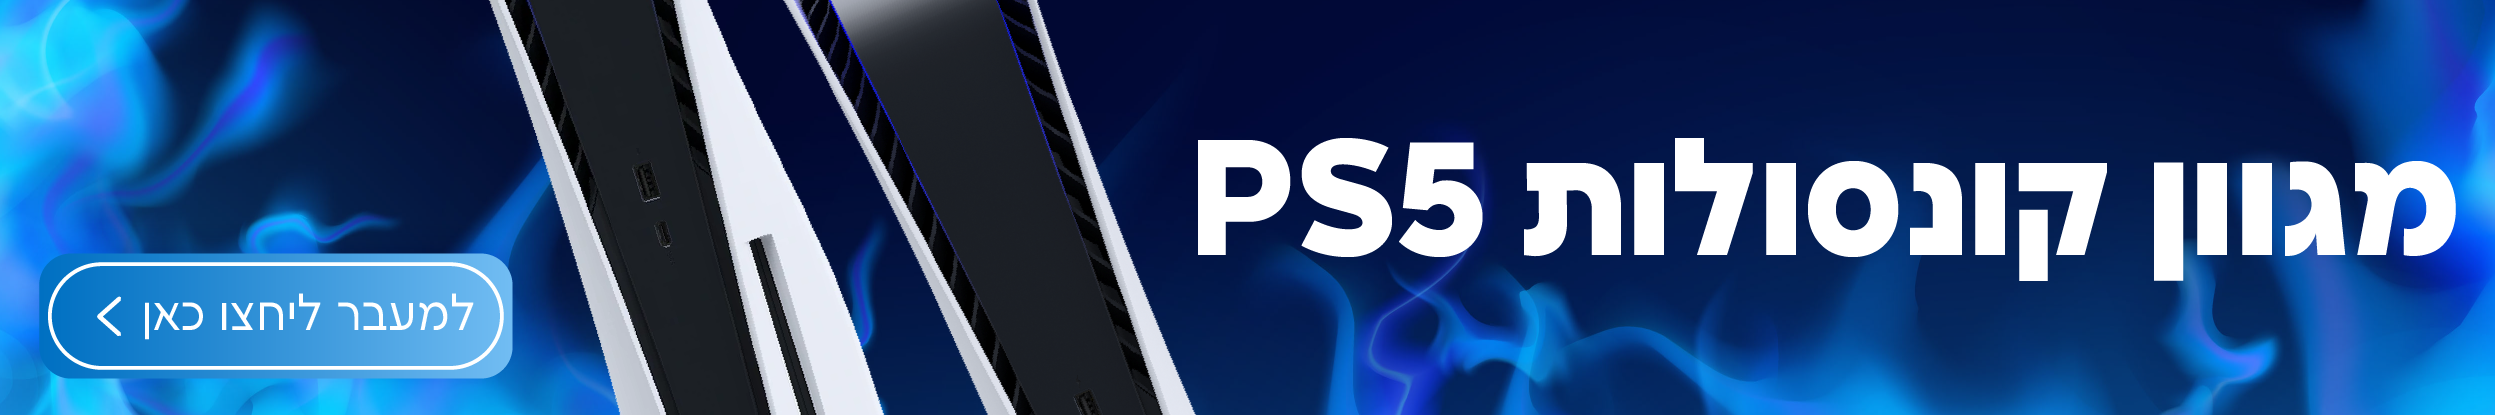 קונסולות PS5